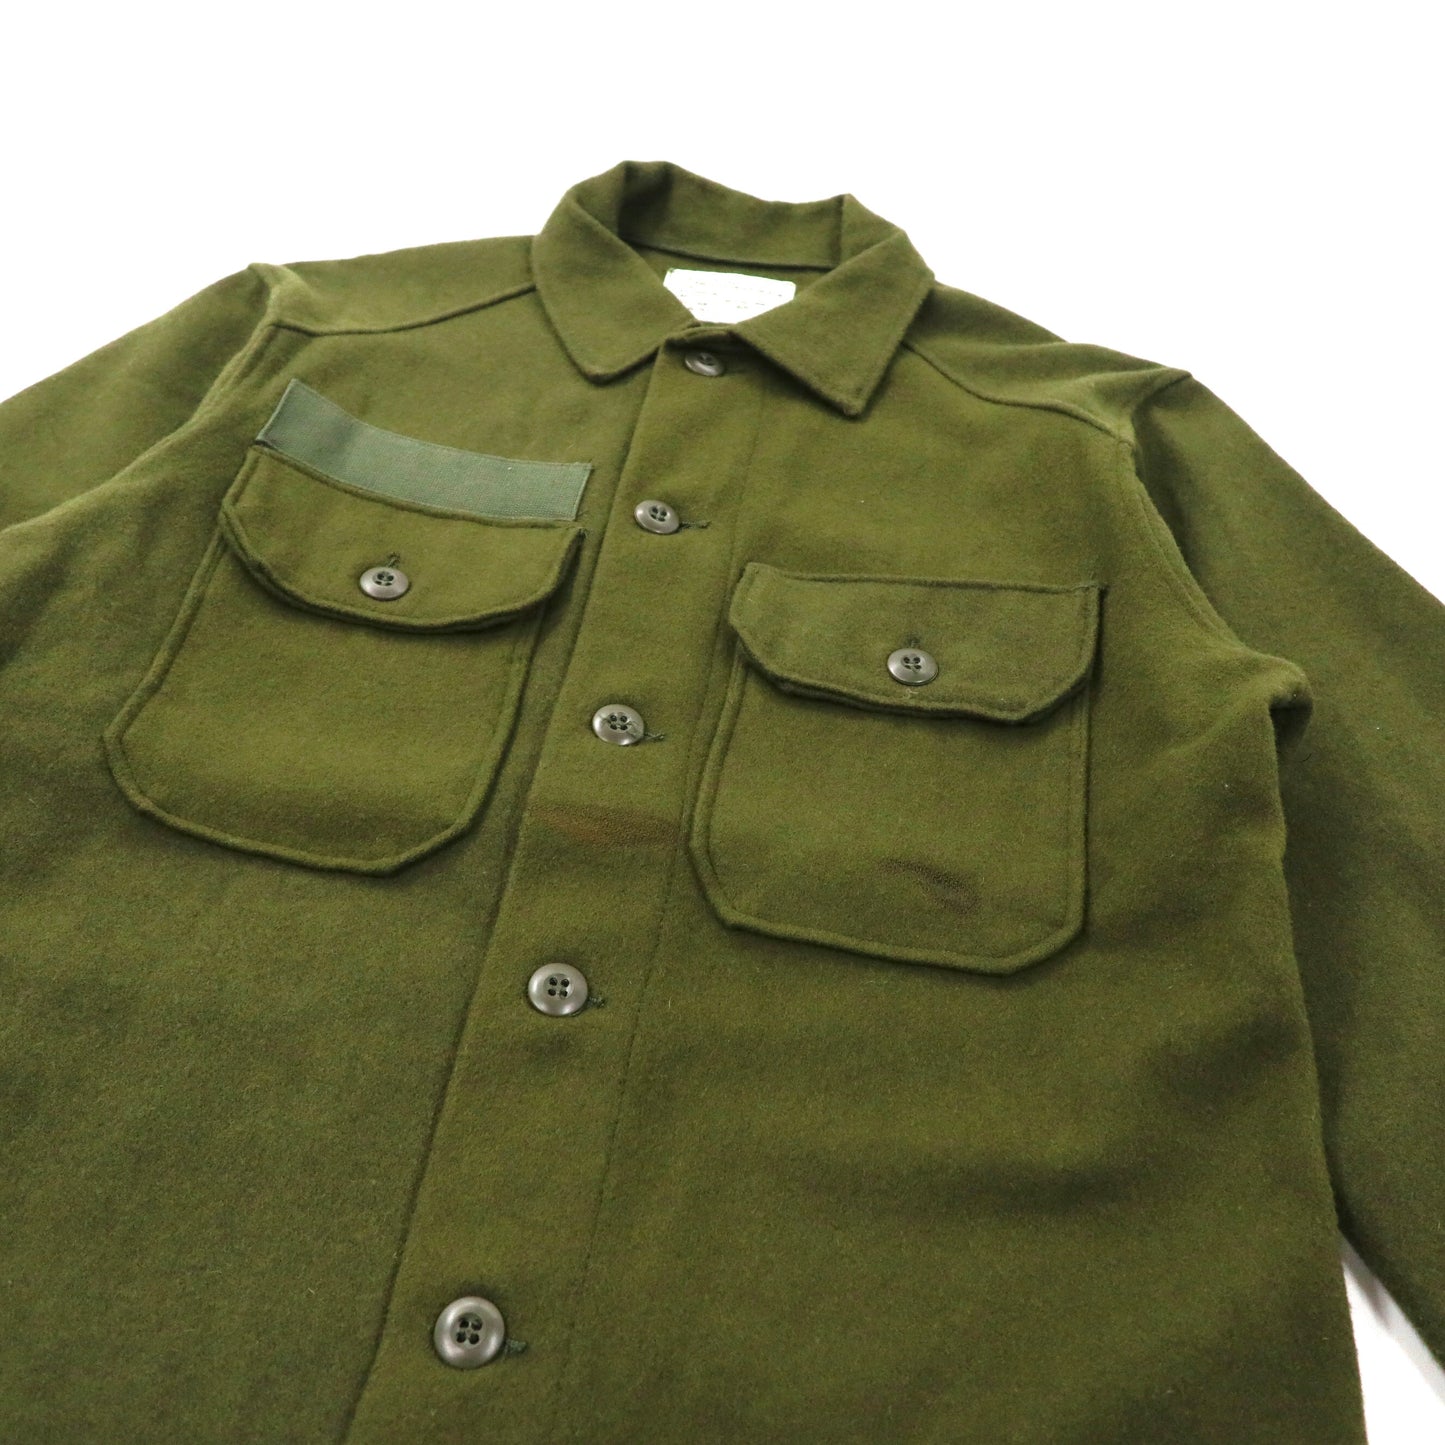 US.ARMY メルトン フィールドシャツ S カーキ ウール DALE FASHIONS社製 DSA100-77-C-1554 70年代 USA製